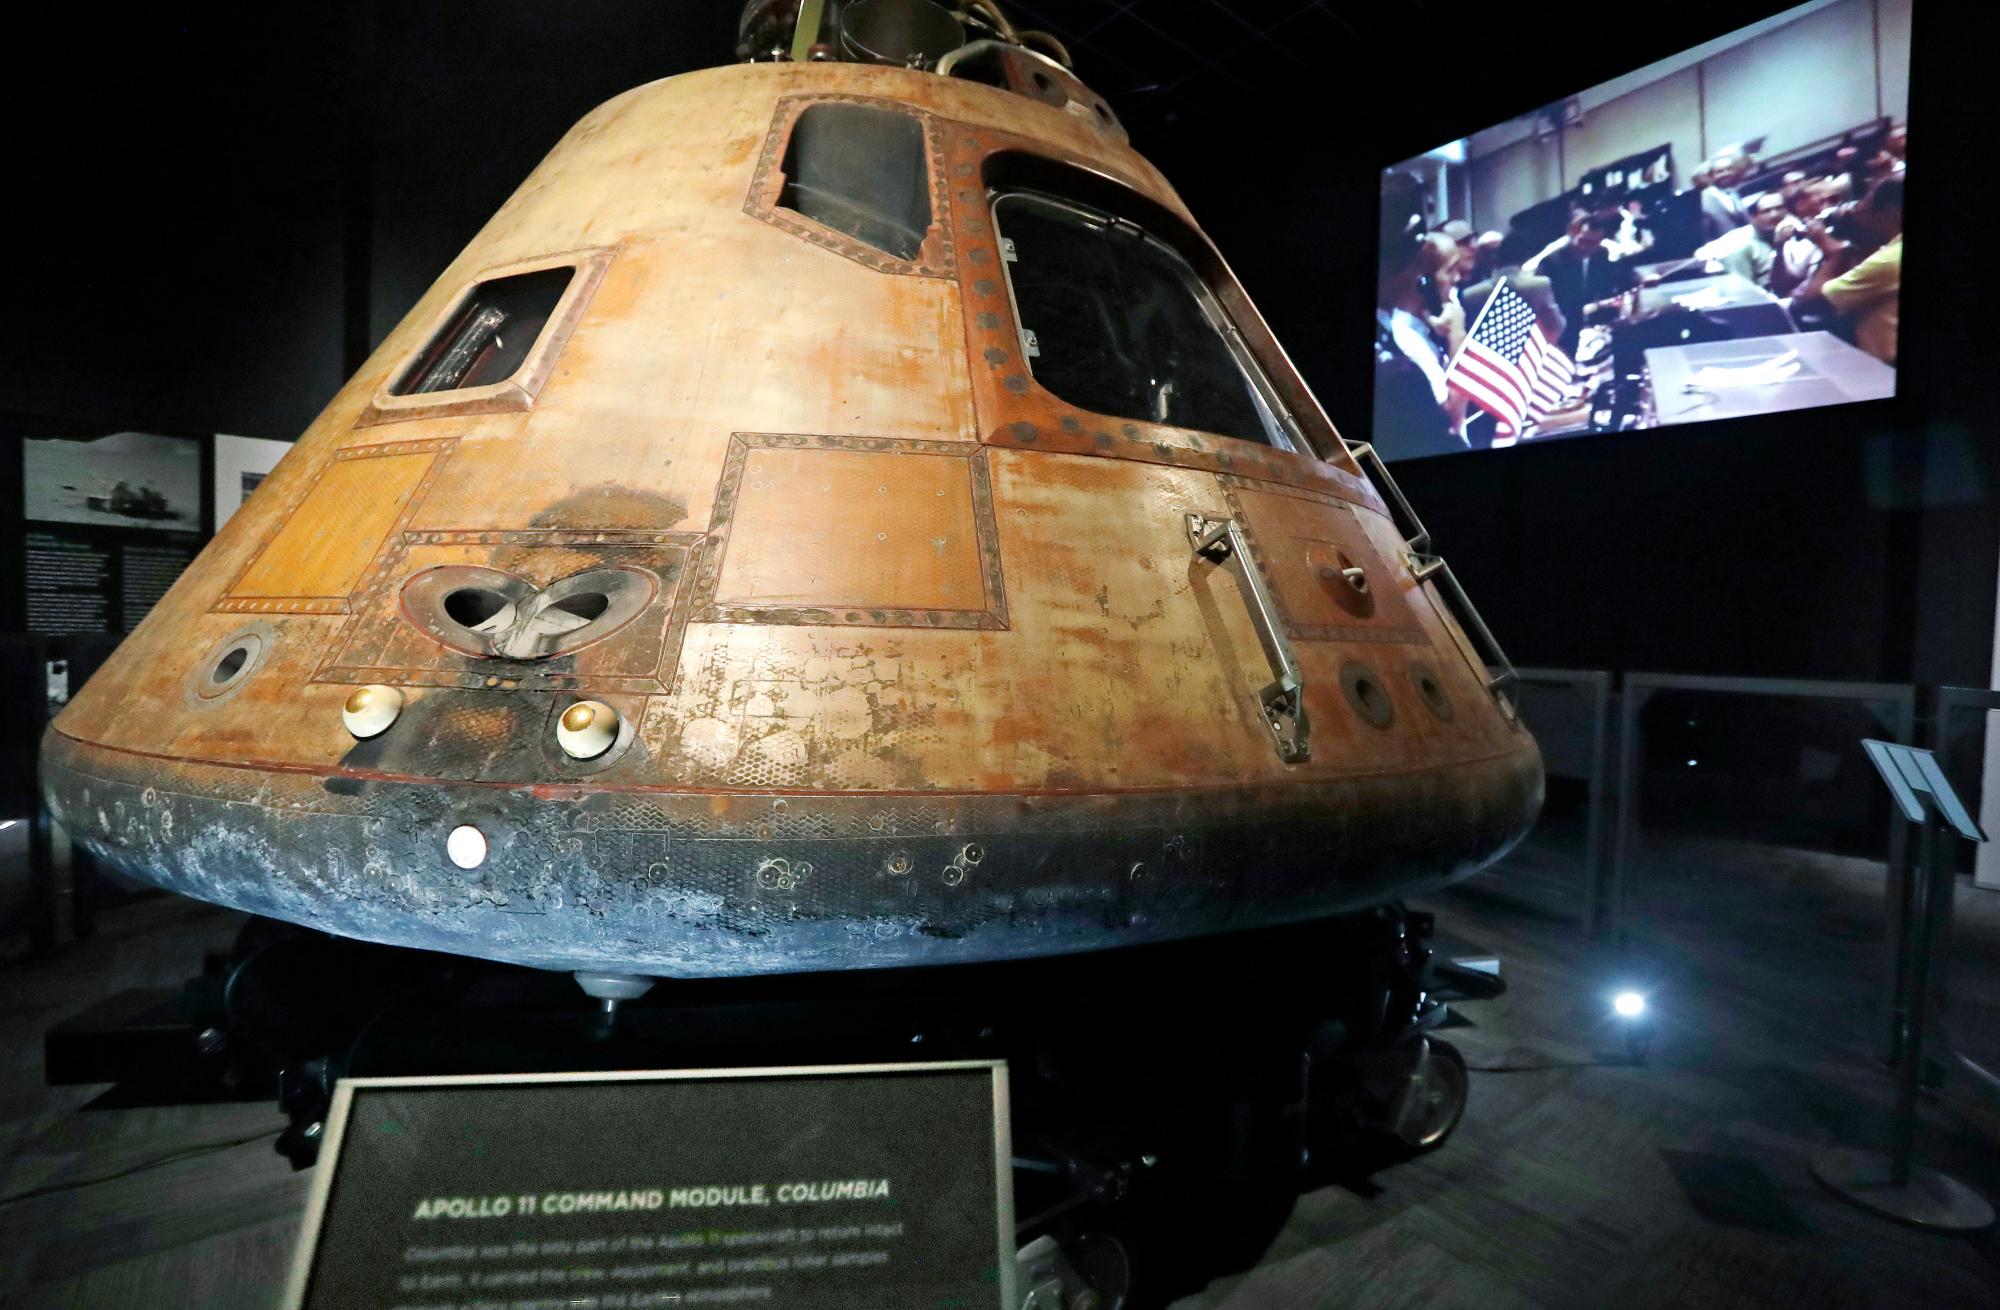 El módulo de comando de la NASA Apollo 11, Columbia, con videos que muestran los aspectos más destacados de su viaje a la luna en 1969, se asienta como la pieza central de Destination Moon: La exhibición de la misión Apollo 11 en el Museo de Vuelo en Seattle. La pantalla también incluye una réplica a gran escala del vehículo de ascenso del módulo lunar y las piezas del motor F-1 recuperadas, que impulsaron el cohete Saturn V que llevó los módulos de Apollo al espacio y se recuperaron del océano Atlántico más de 40 años después.